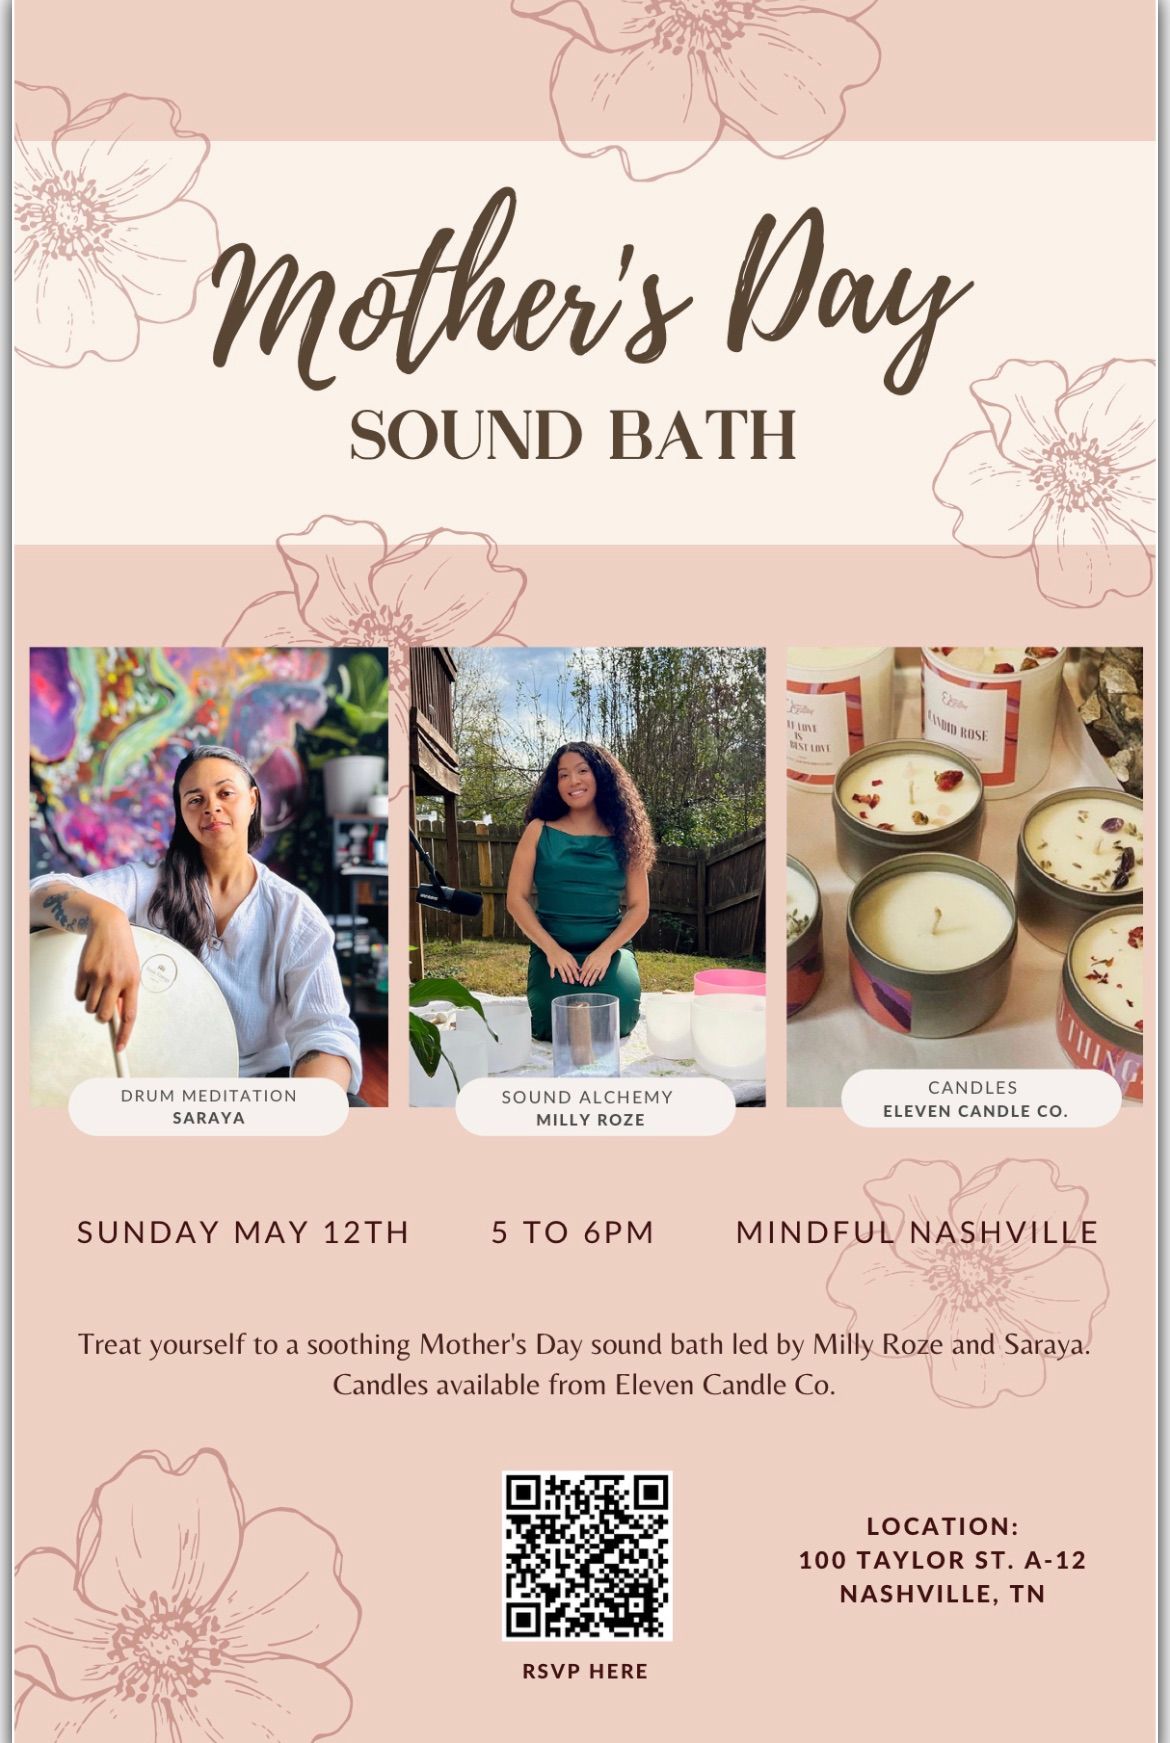 Mothers Day Sound Bath (Nashville) 